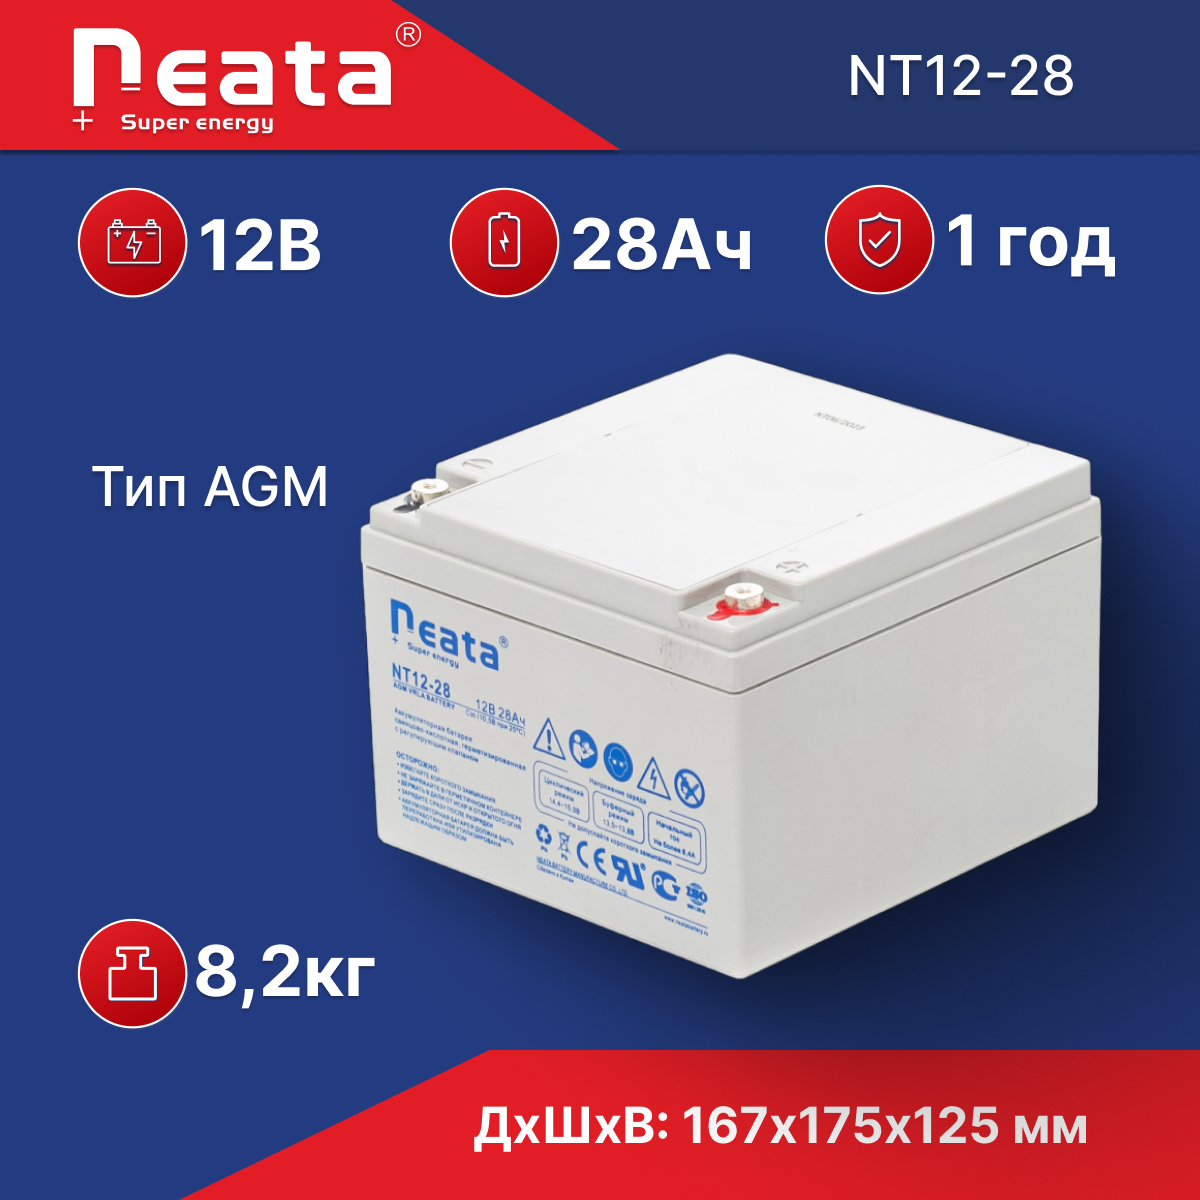 Аккумулятор Neata NT 12-28